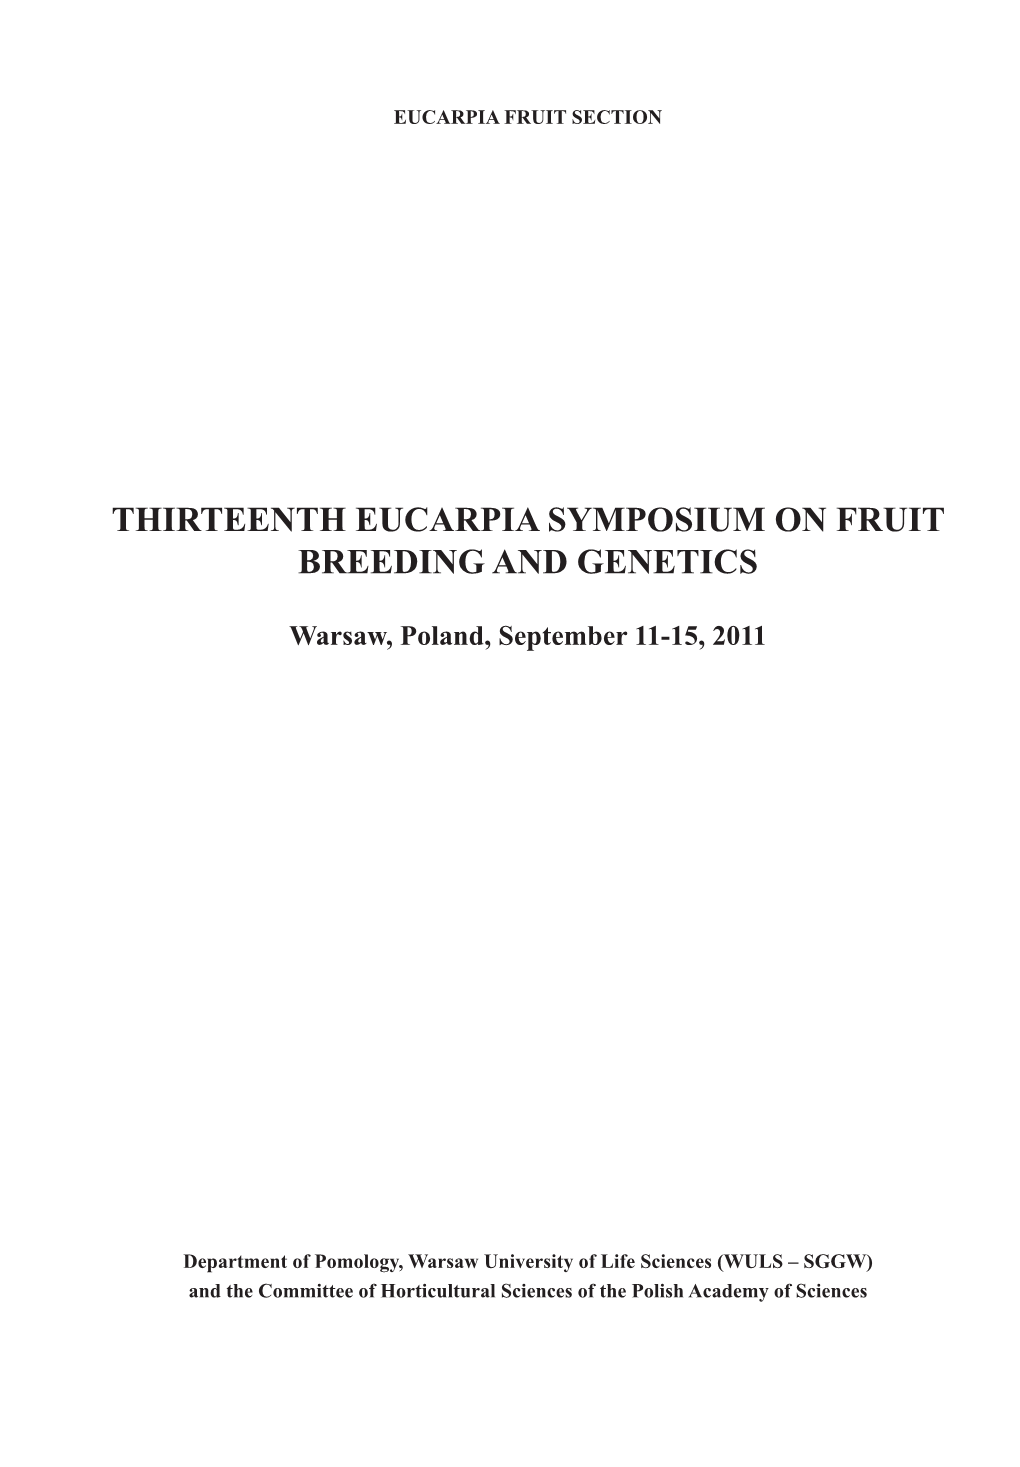 Thirteenth Eucarpia Symposium on Fruit Breeding and Genetics